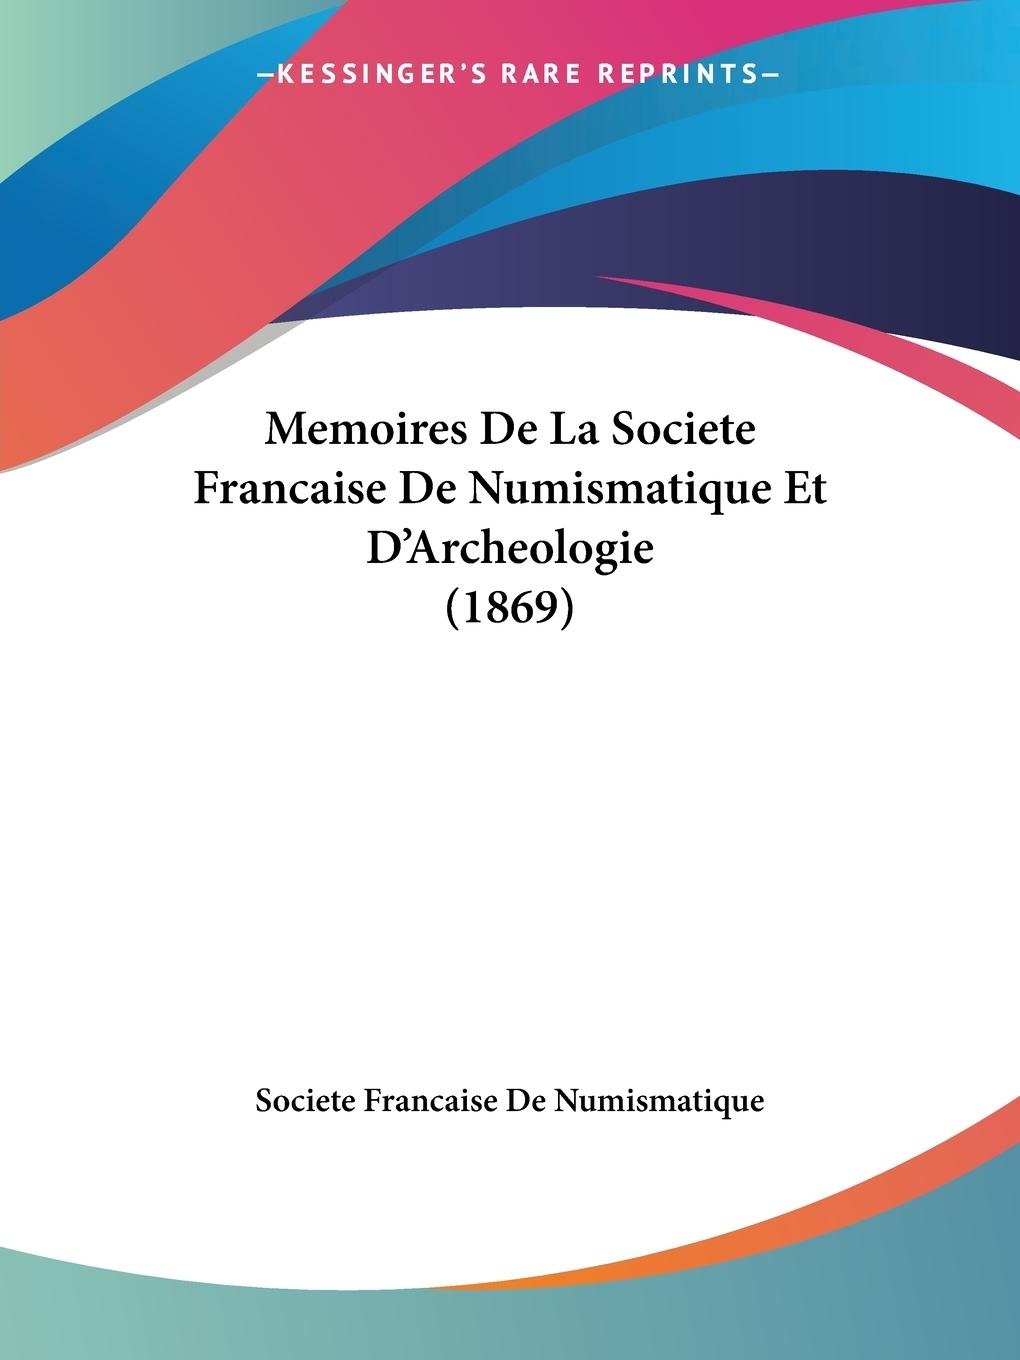 Memoires De La Societe Francaise De Numismatique Et D Archeologie (1869) - Societe Francaise De Numismatique